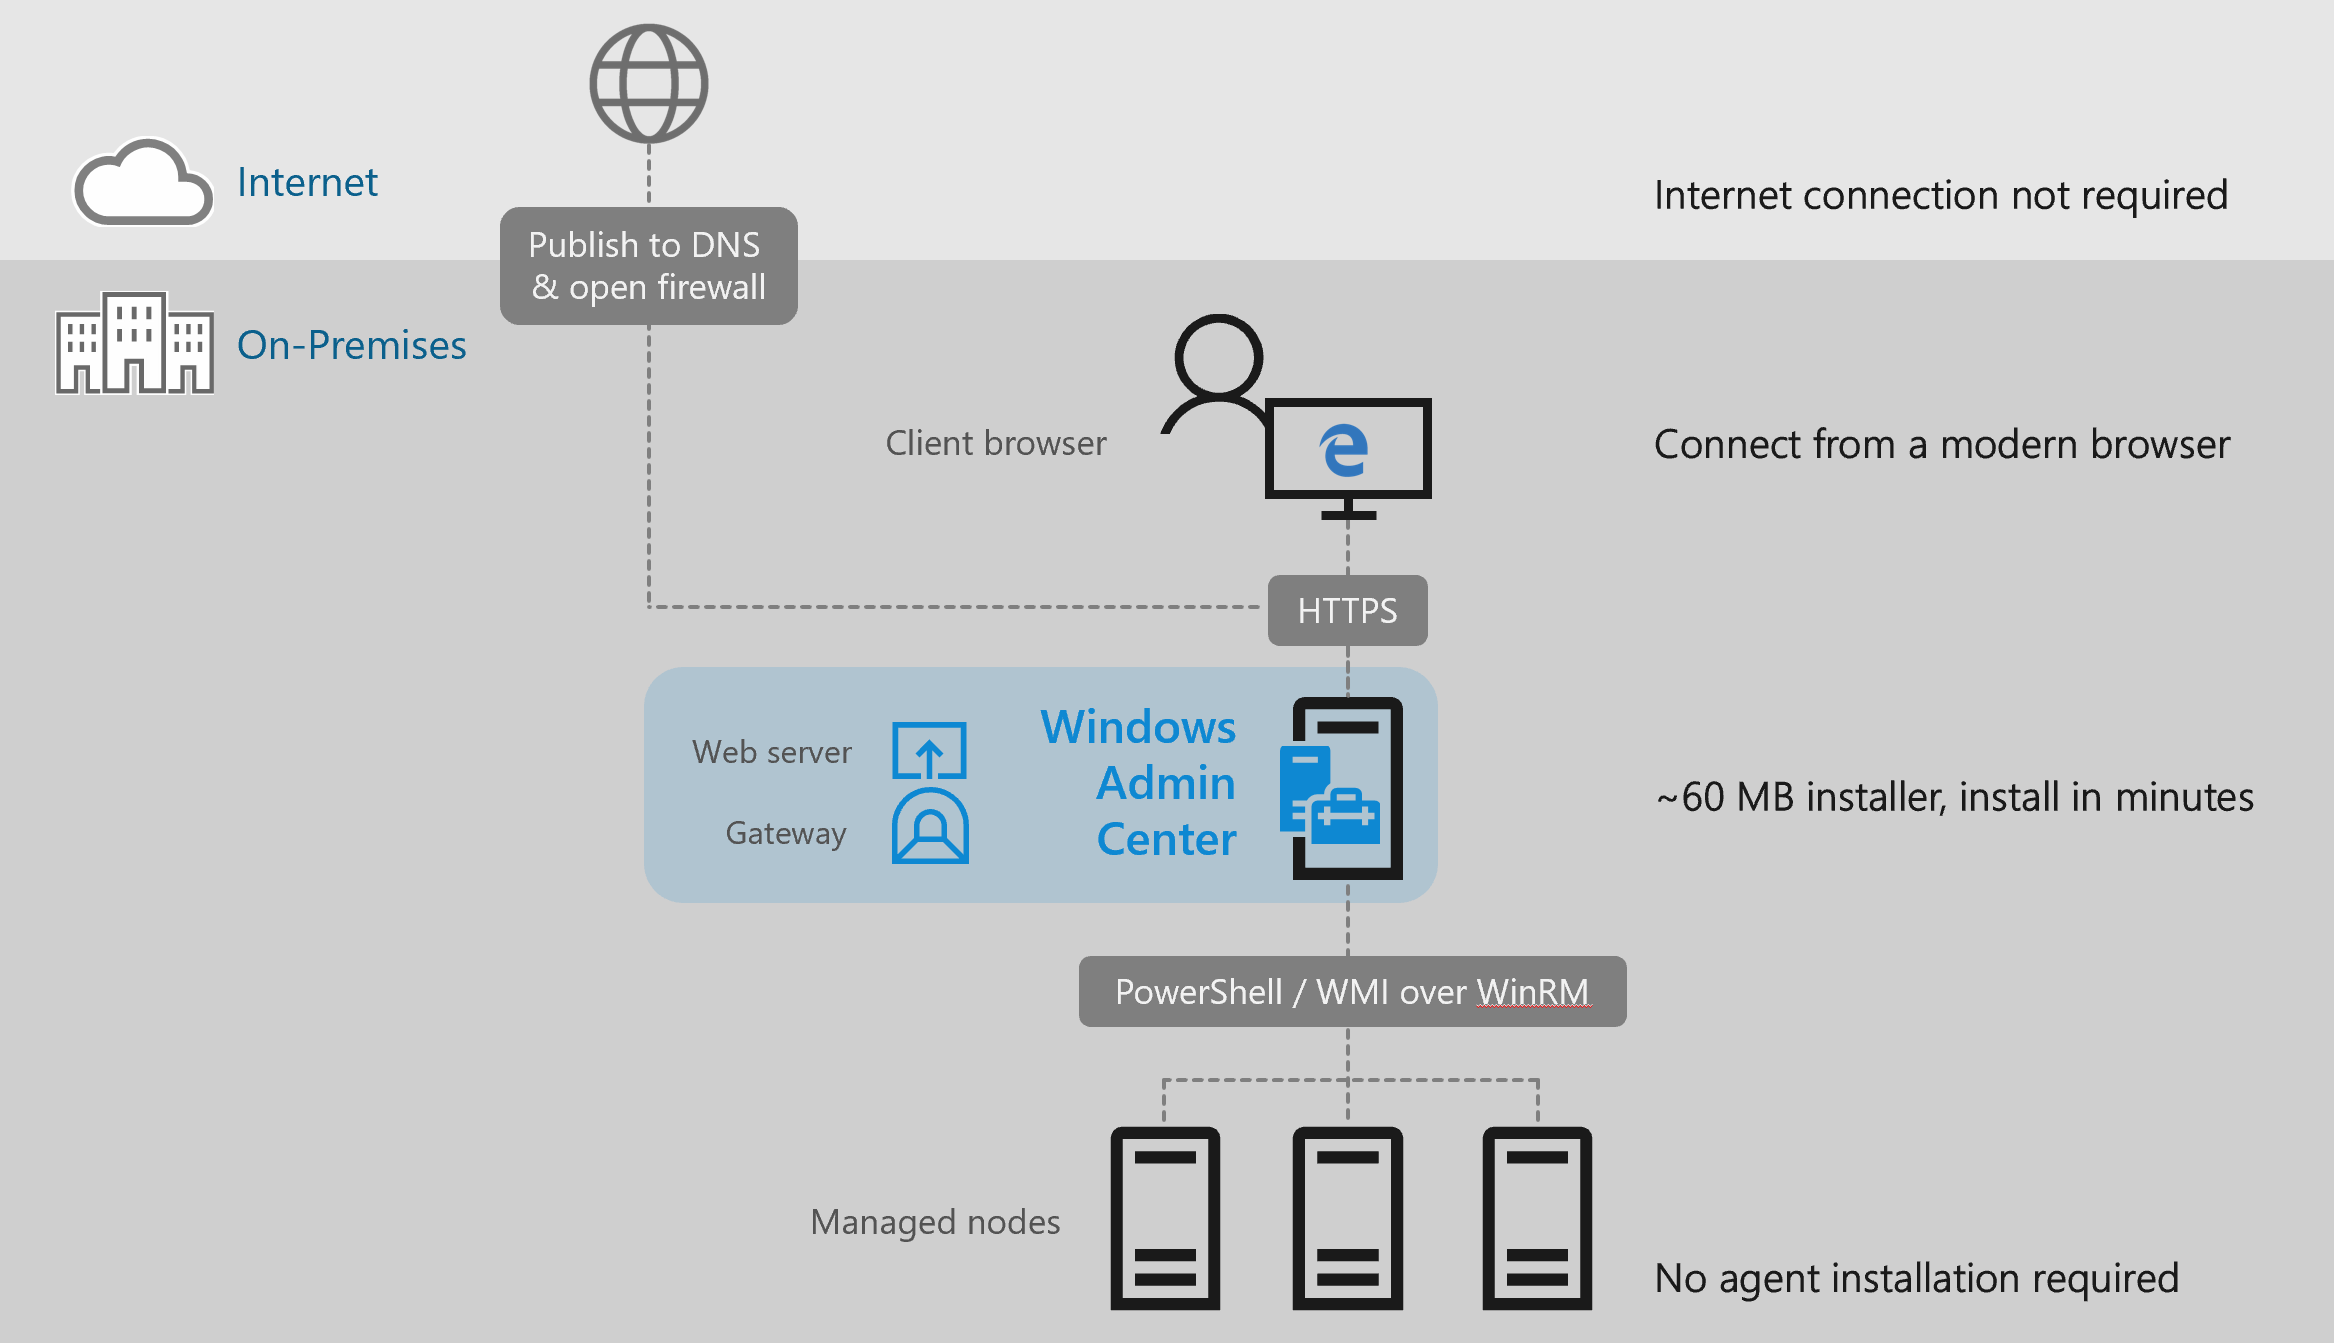 Windows Admin Center 体系结构的示意图